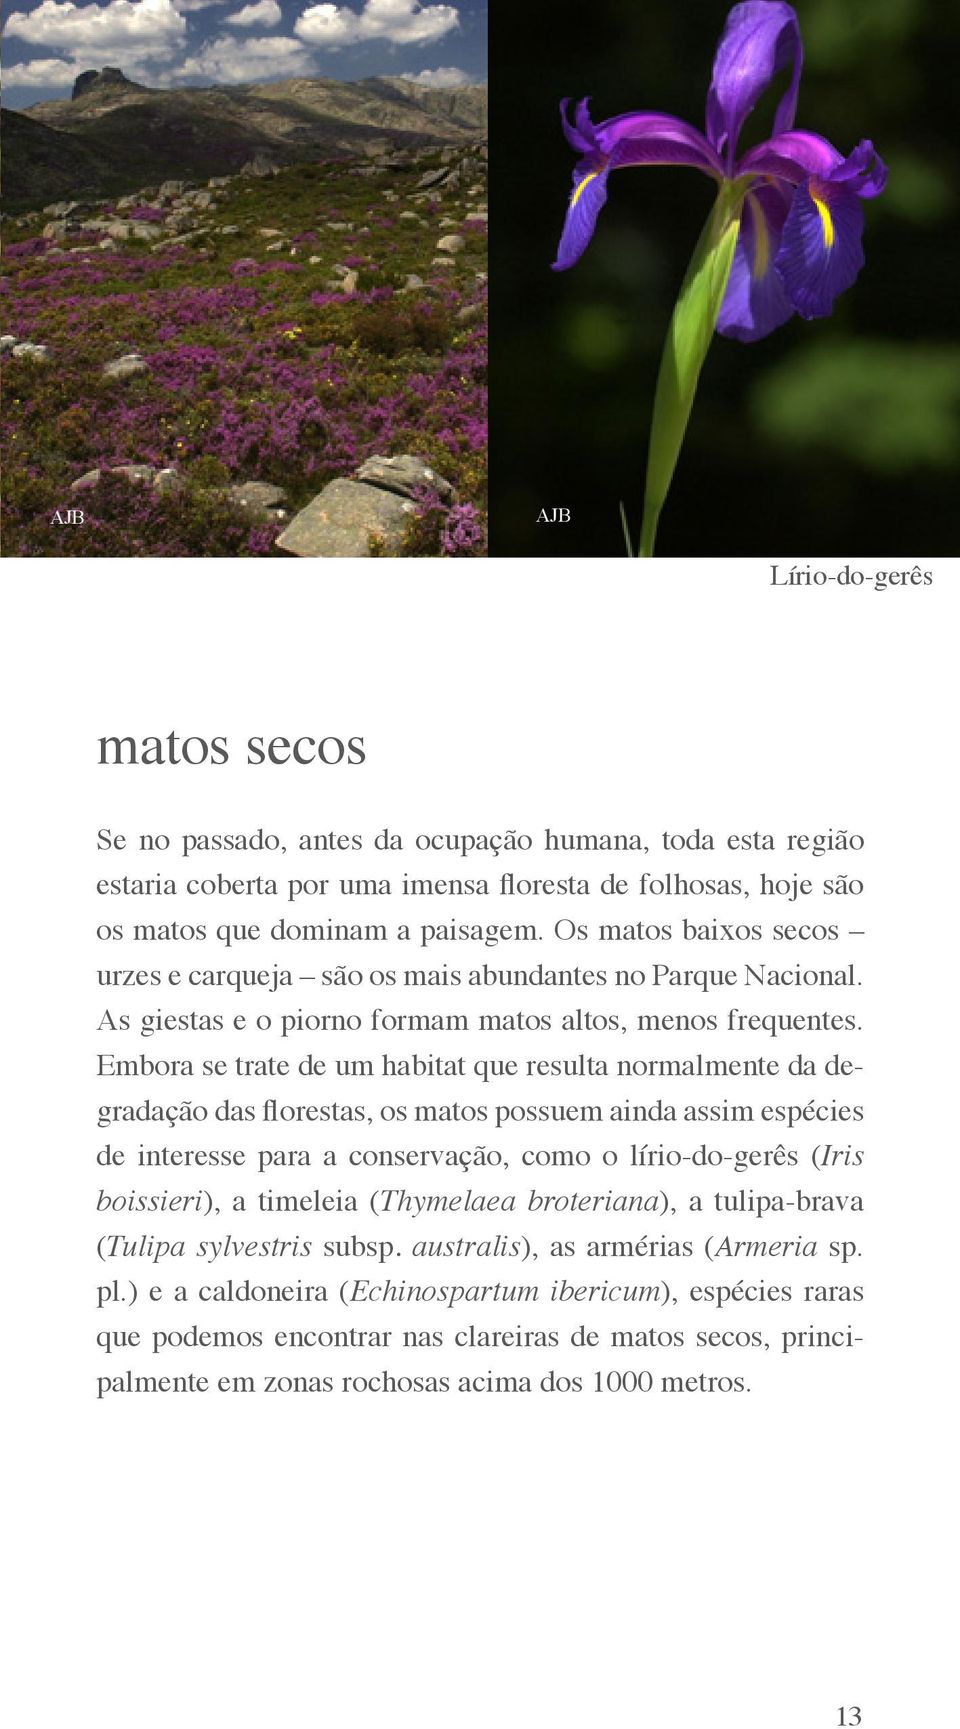 Embora se trate de um habitat que resulta normalmente da degradação das florestas, os matos possuem ainda assim espécies de interesse para a conservação, como o lírio-do-gerês (Iris boissieri), a